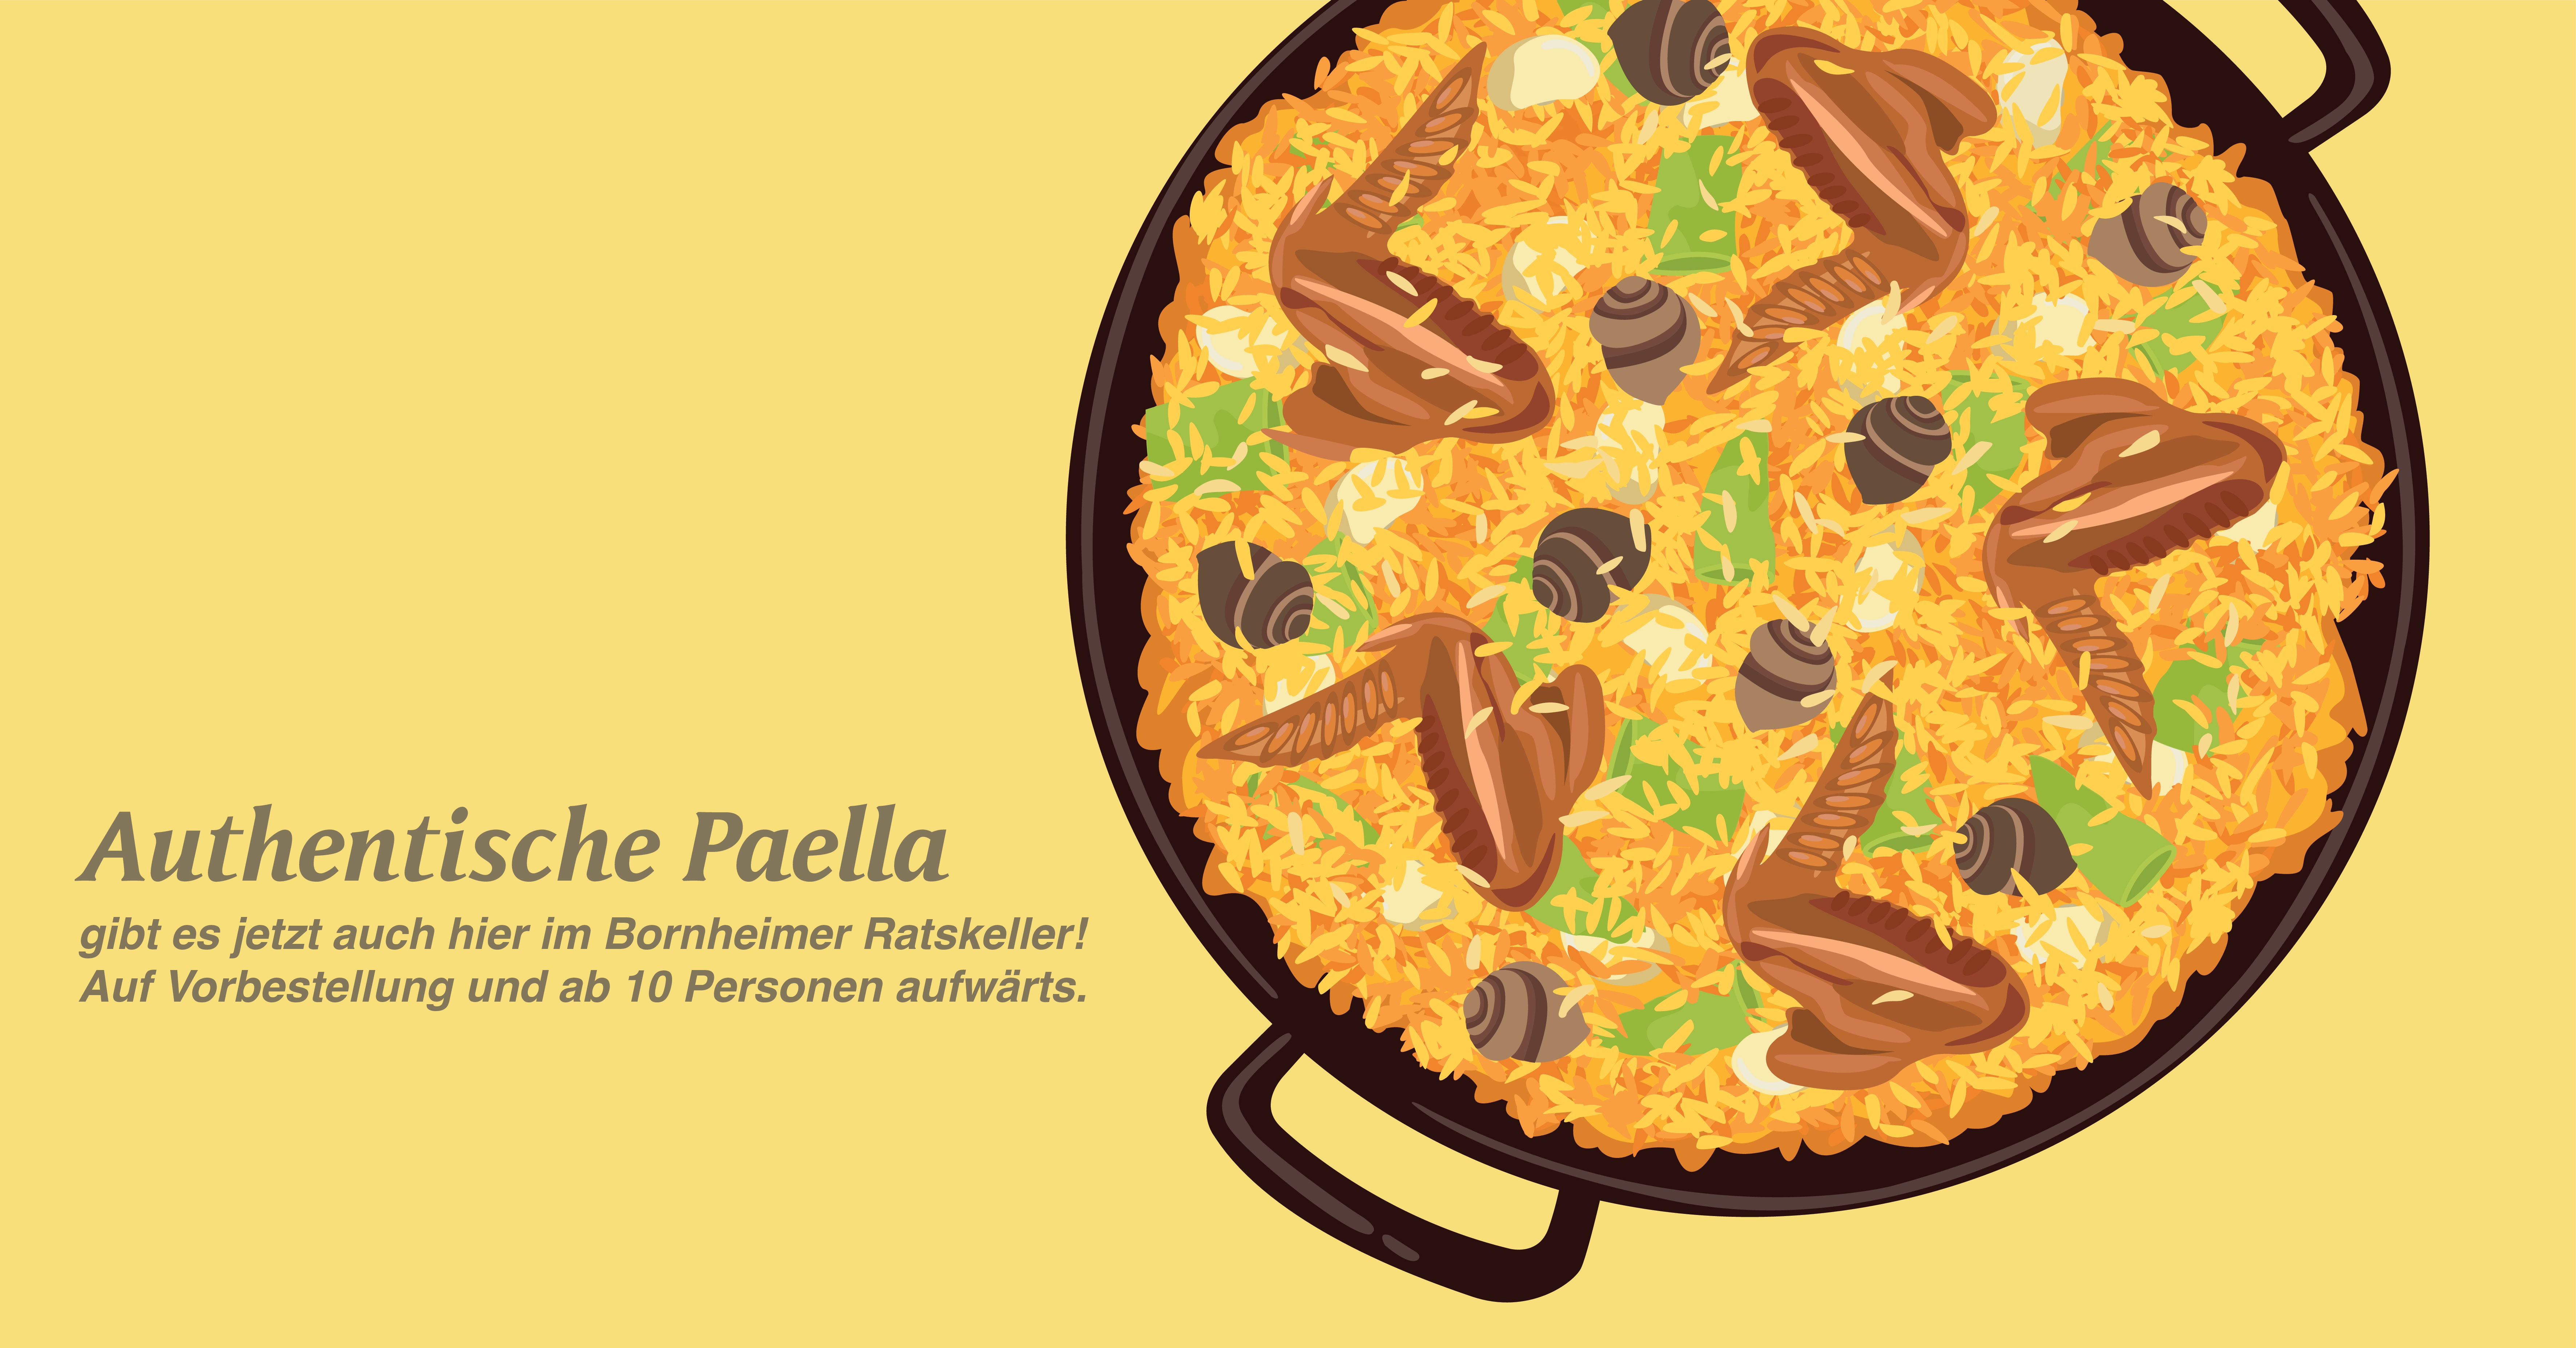 Authentische Paella im Bornheimer Ratskeller